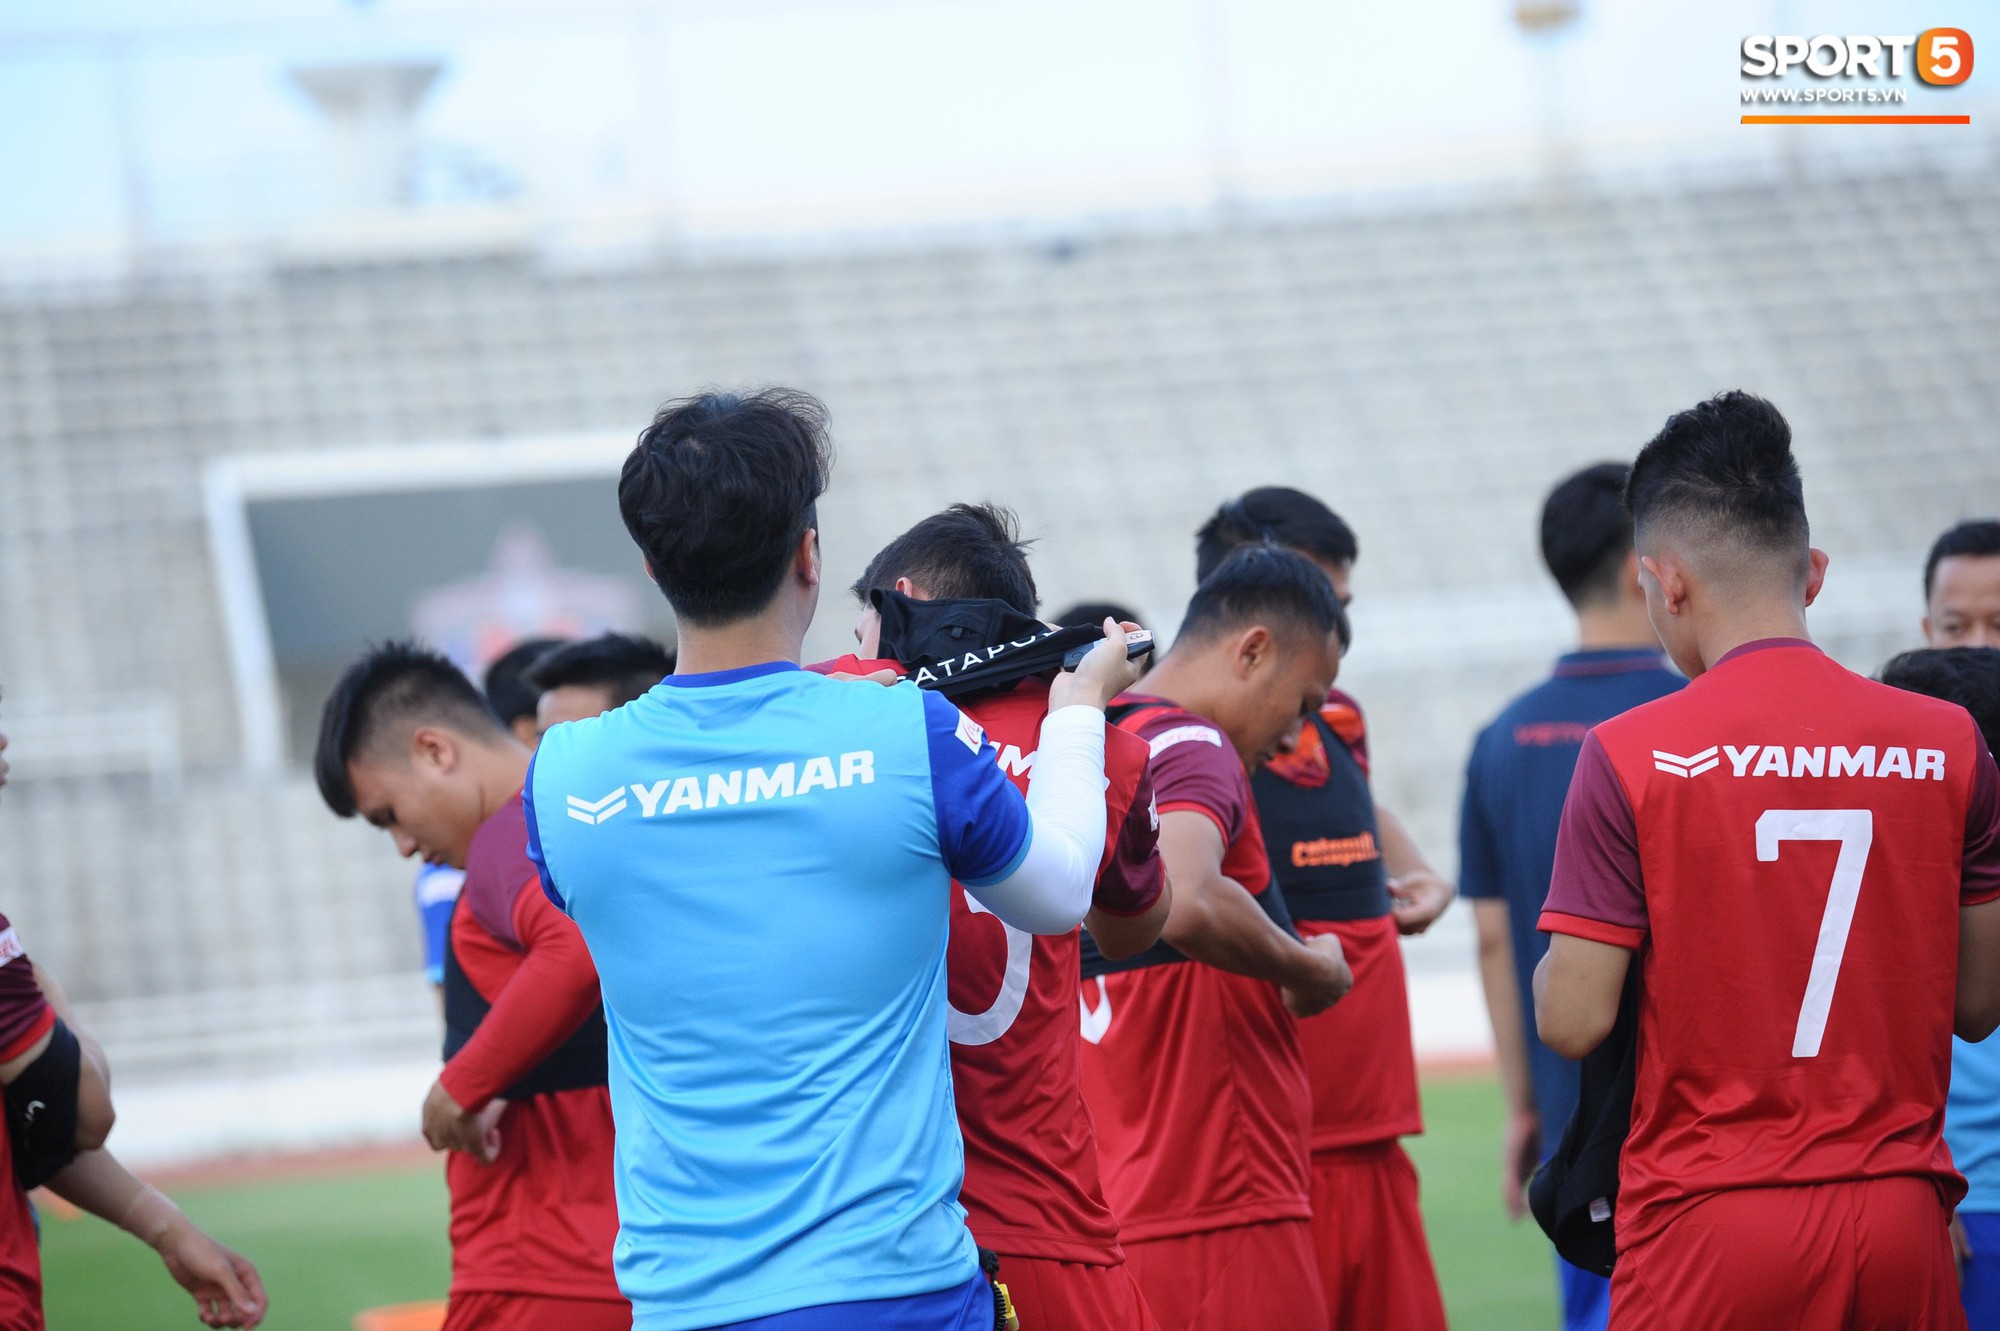 HLV thể lực người Hàn đi tất in cờ Việt Nam và sự chăm lo của những người thầm lặng trước thềm Kings Cup 2019 - Ảnh 7.